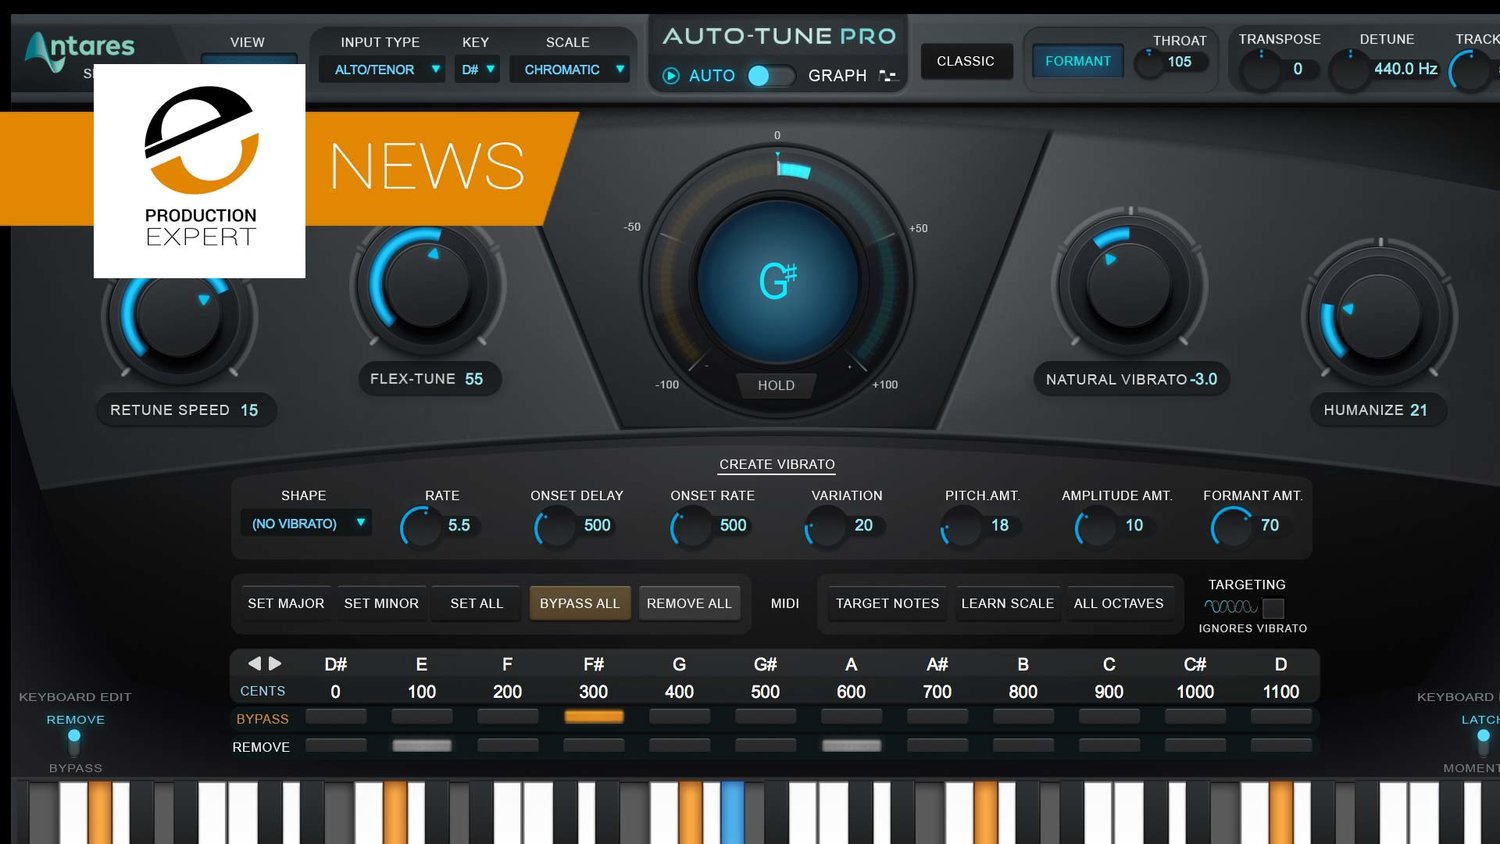 Just tune. Antares - auto-Tune Pro x. Autotune Pro 5. Antares auto-Tune Pro v9.1.0.7z. Autotune Pro 2023.